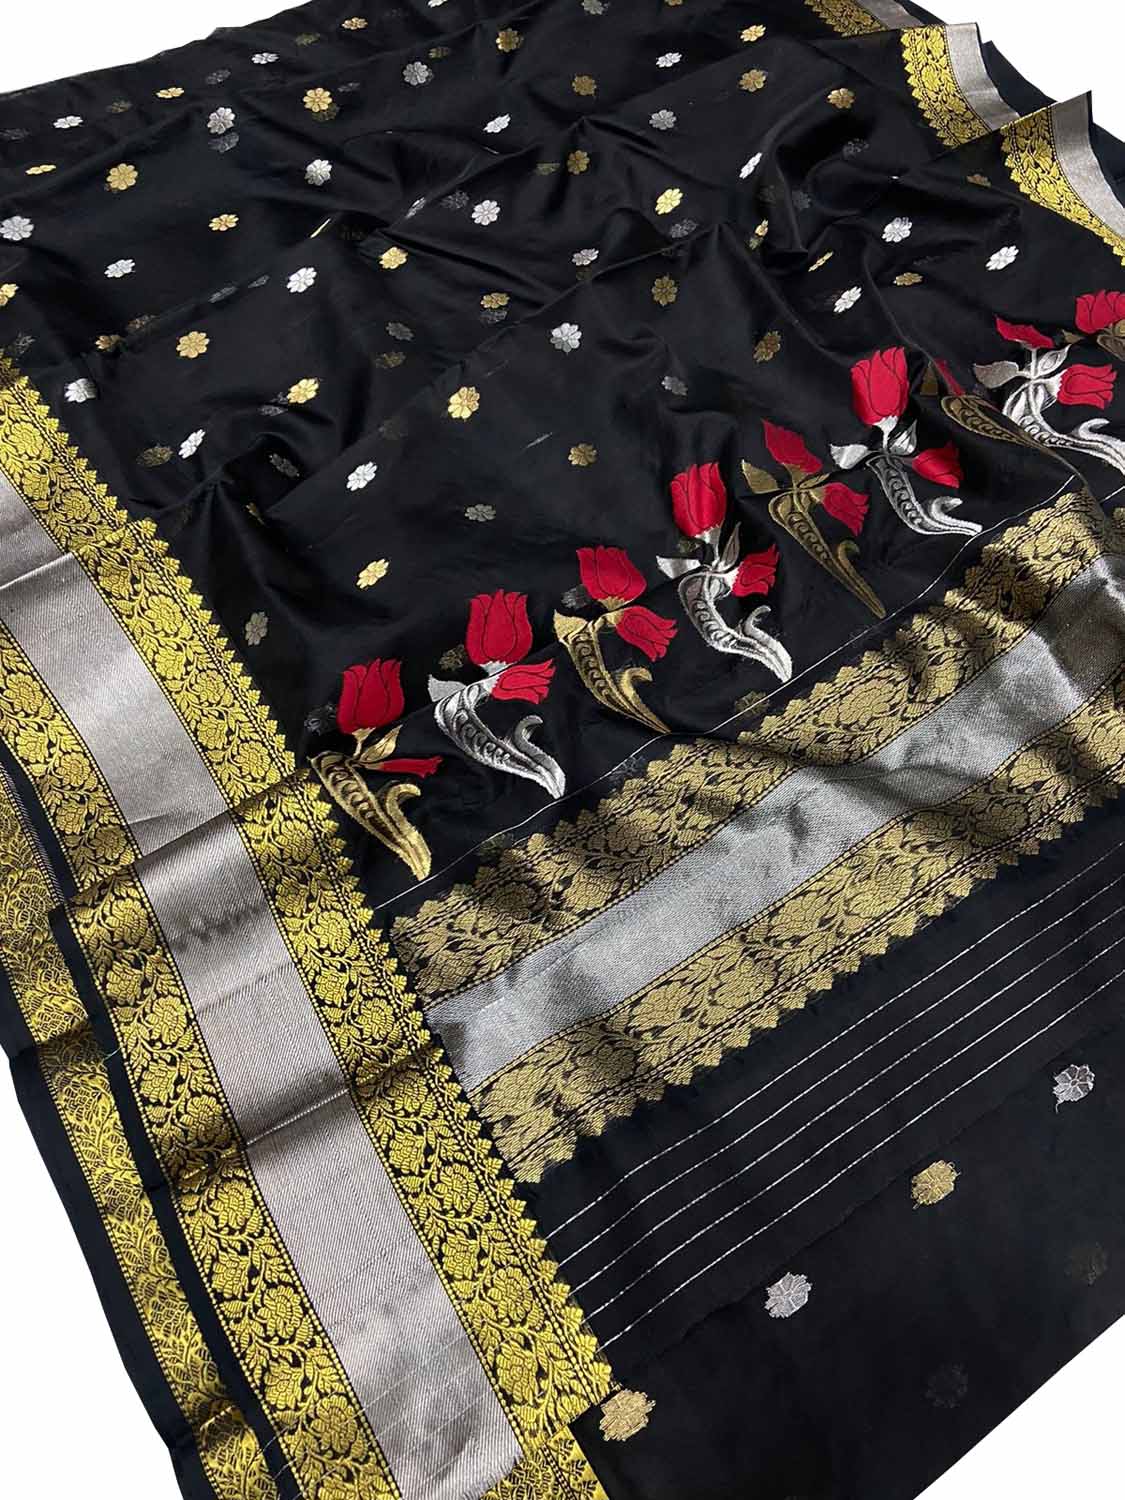 Black Chanderi Handloom Pure Katan Silk Flower Design Saree - Luxurion World